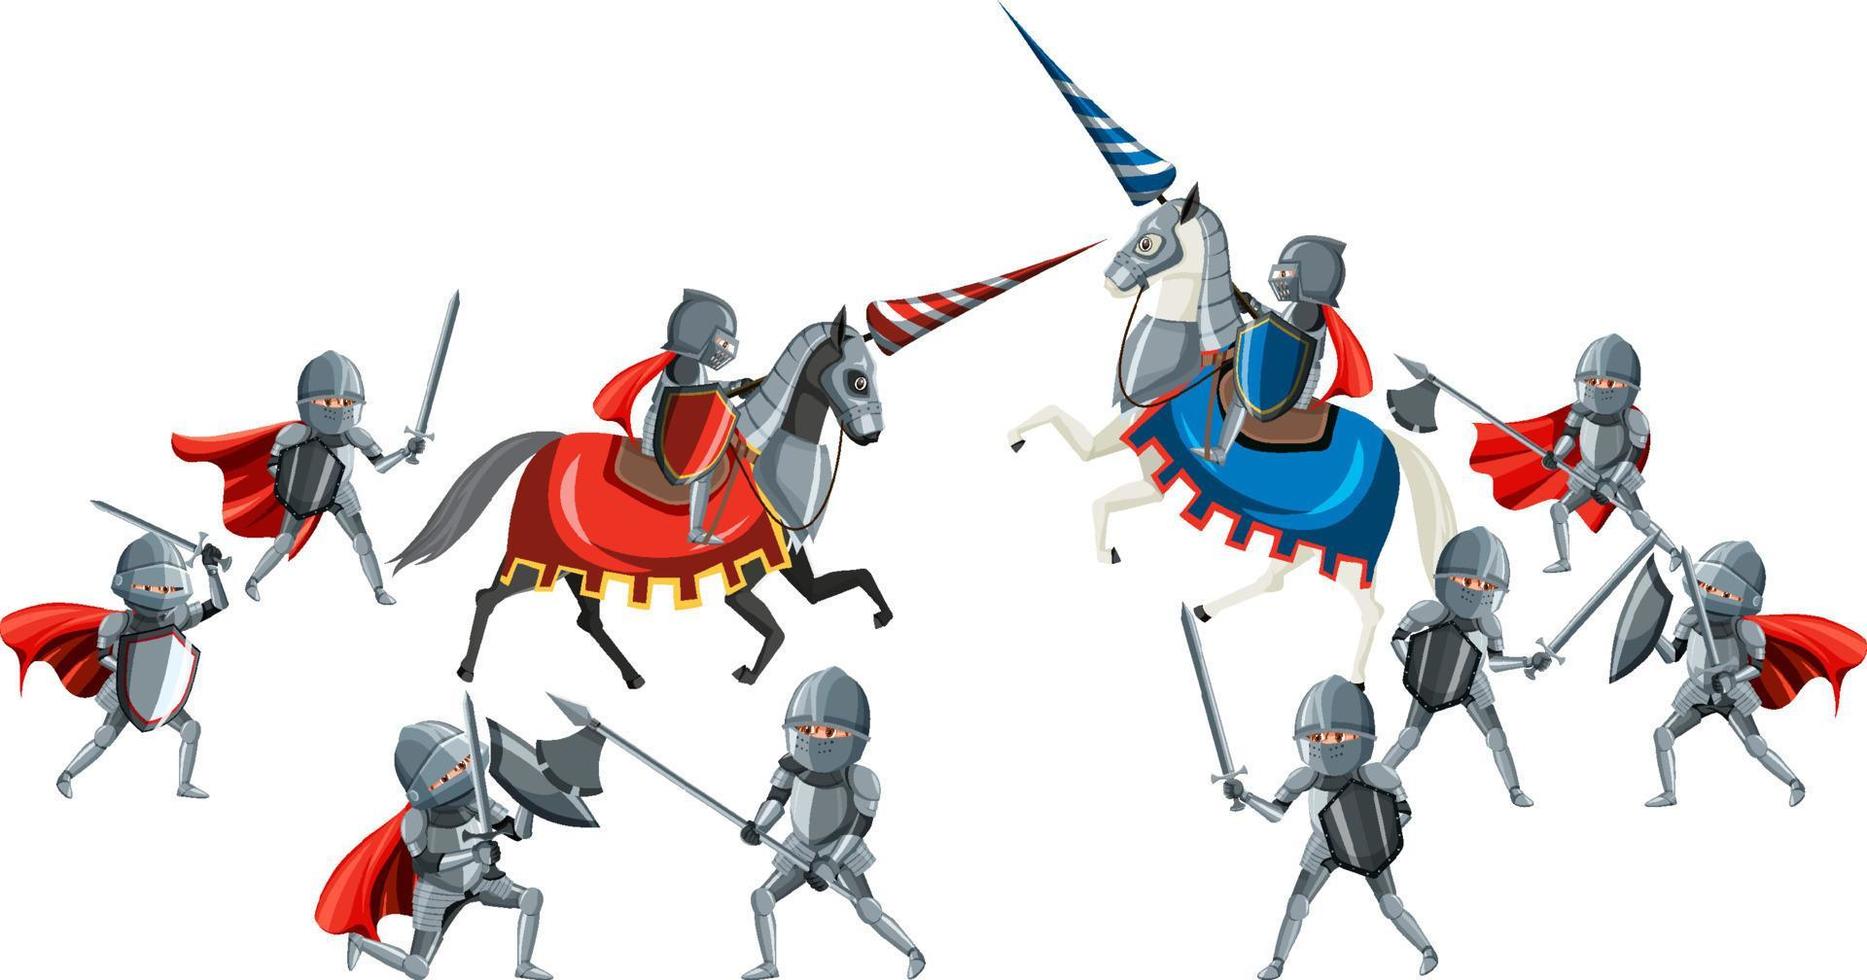 Tournoi de joutes de chevaliers médiévaux sur fond blanc vecteur